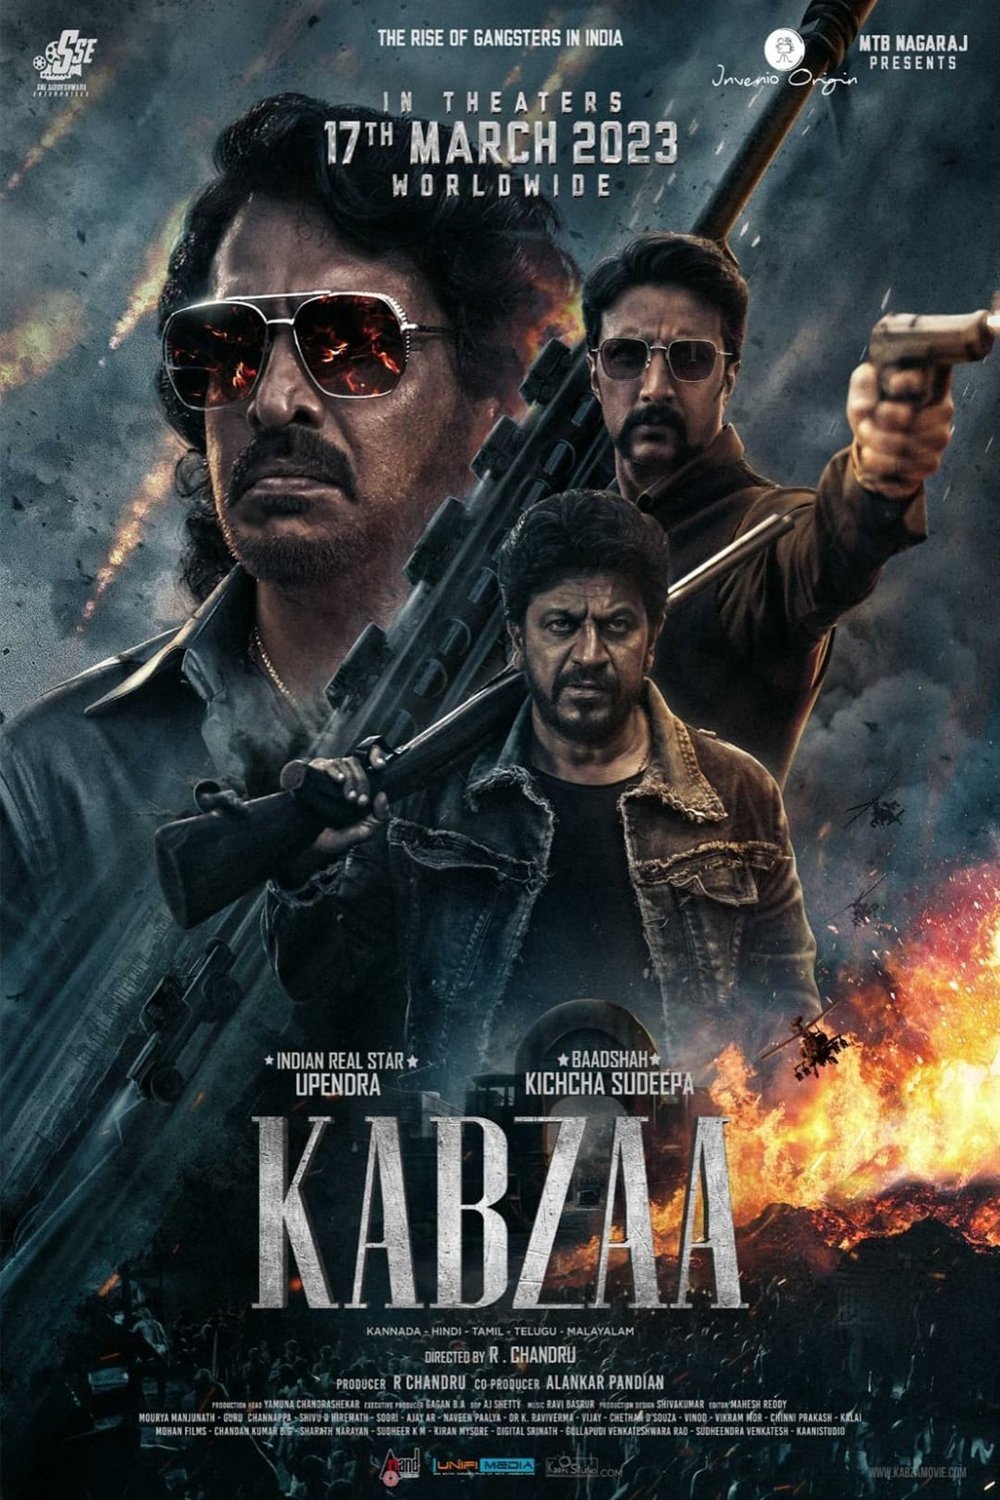 Kannada poster of the movie Kabzaa